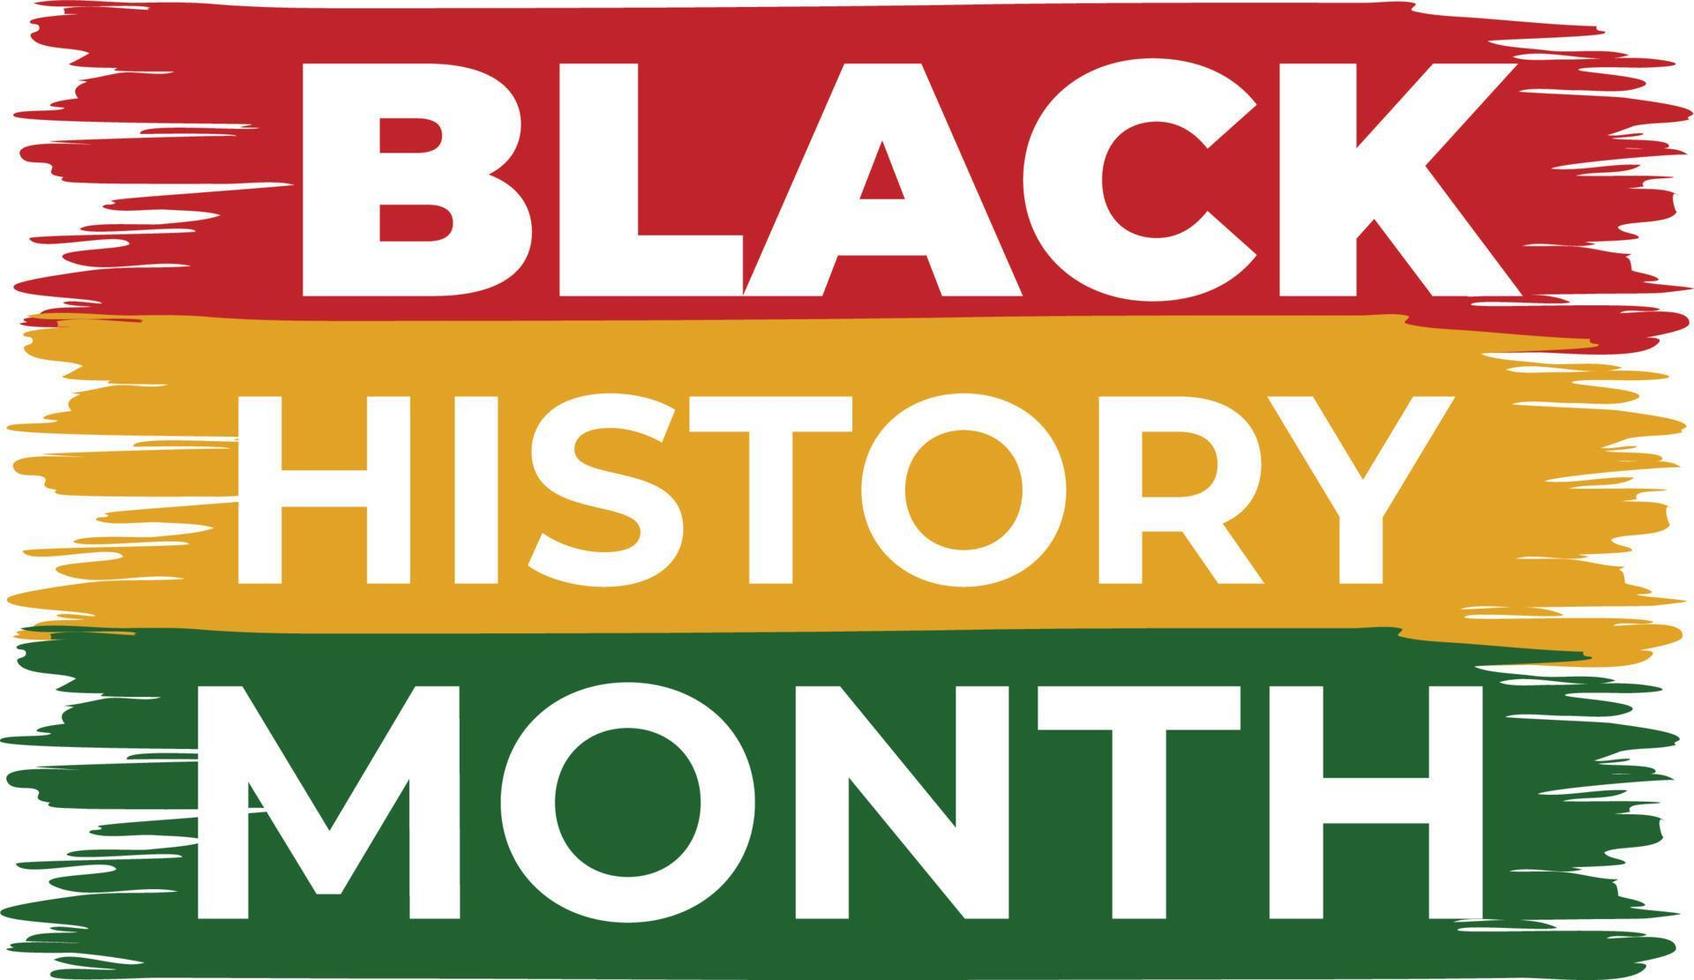 Black History Month Brush Stroke Effect vector